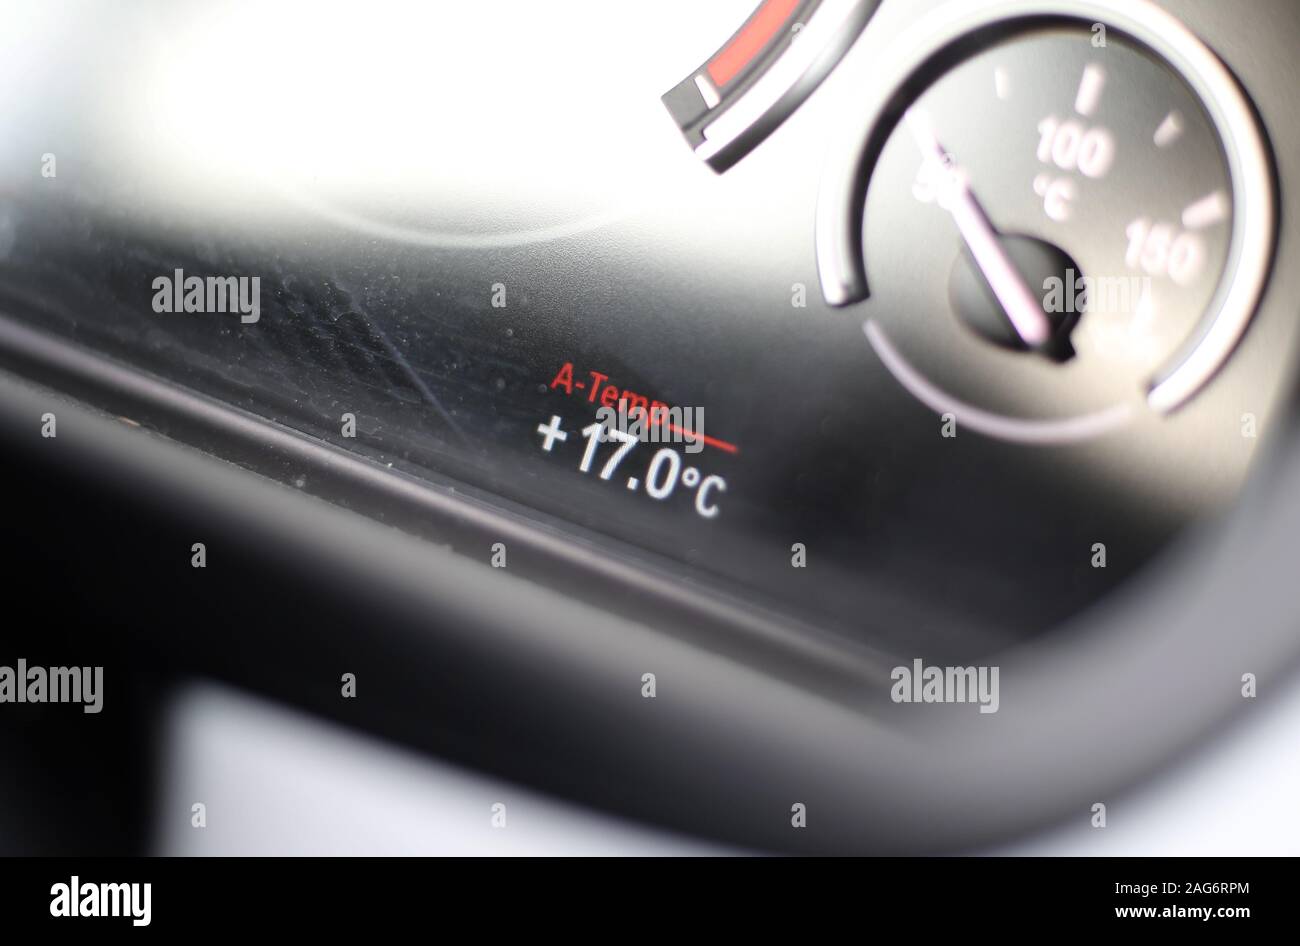 Rieden, Allemagne. 25Th Dec 2019. L'affichage de la température d'une voiture indique une température extérieure de 17 degrés Celsius. Credit : Karl-Josef Opim/dpa/Alamy Live News Banque D'Images